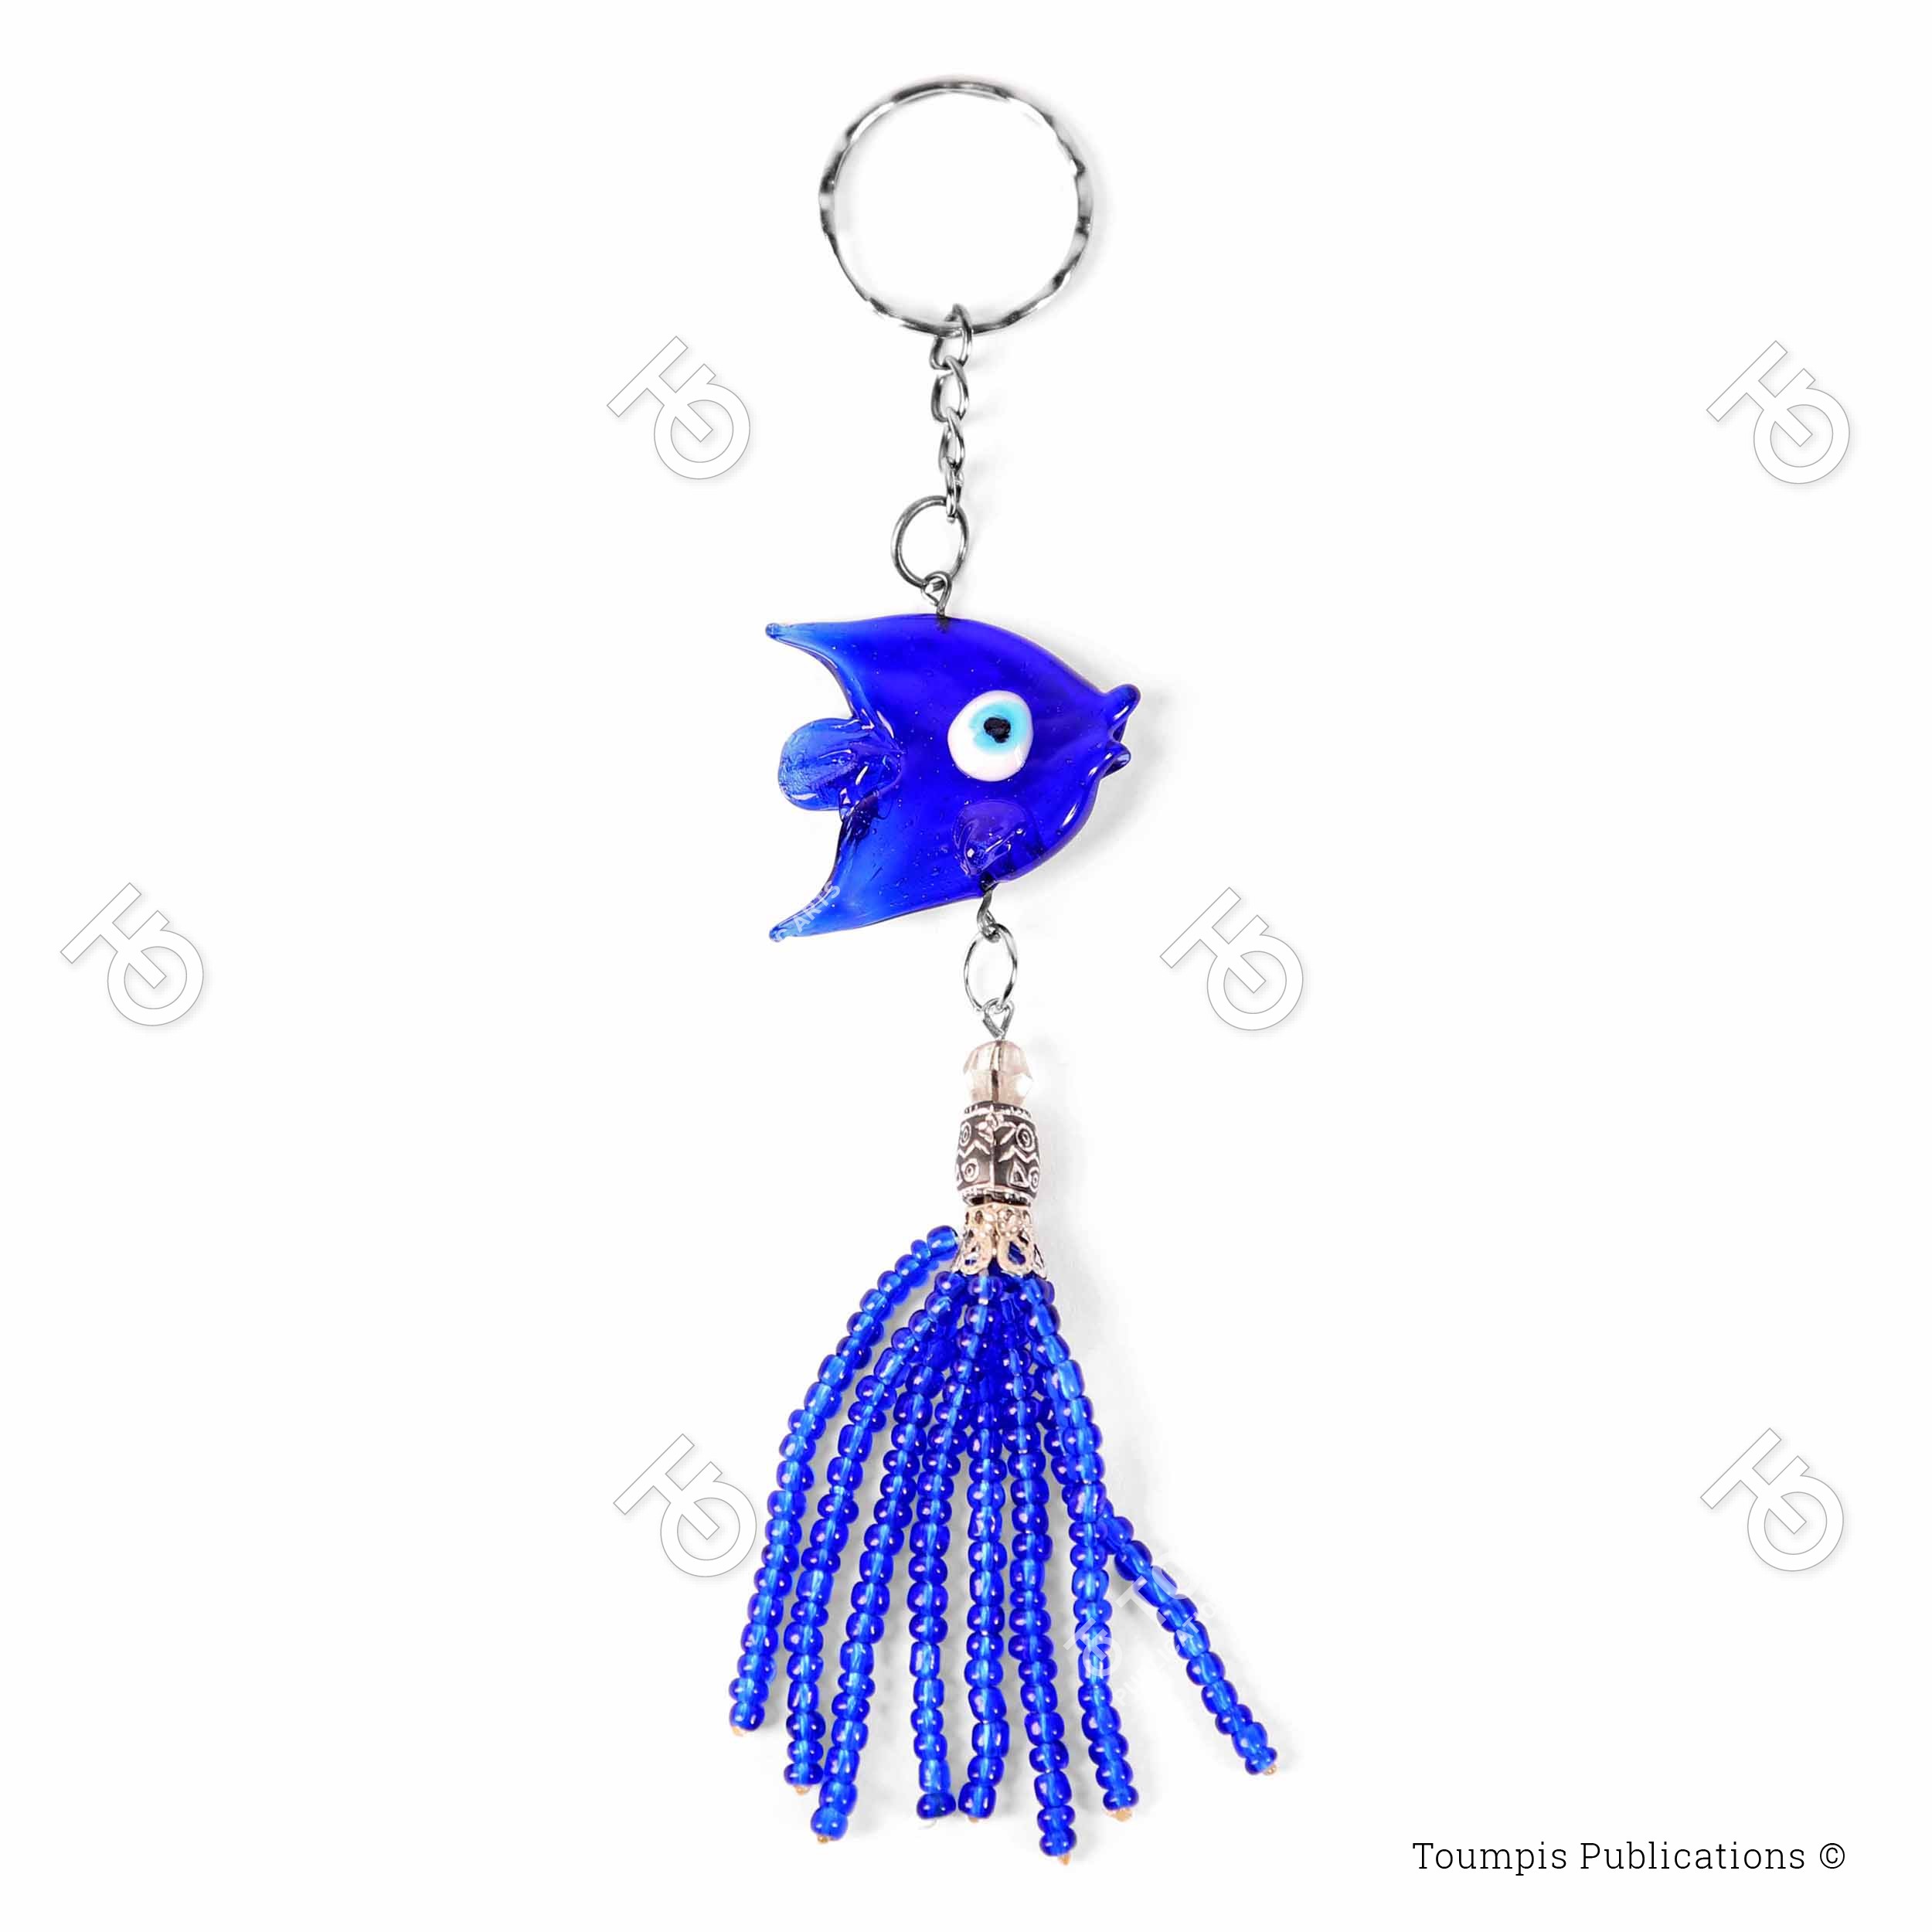 ματάκι ψάρι, μπρελόκ ψαράκι μπλε χάντρα, keychain fish blue, mprelok cari xantra